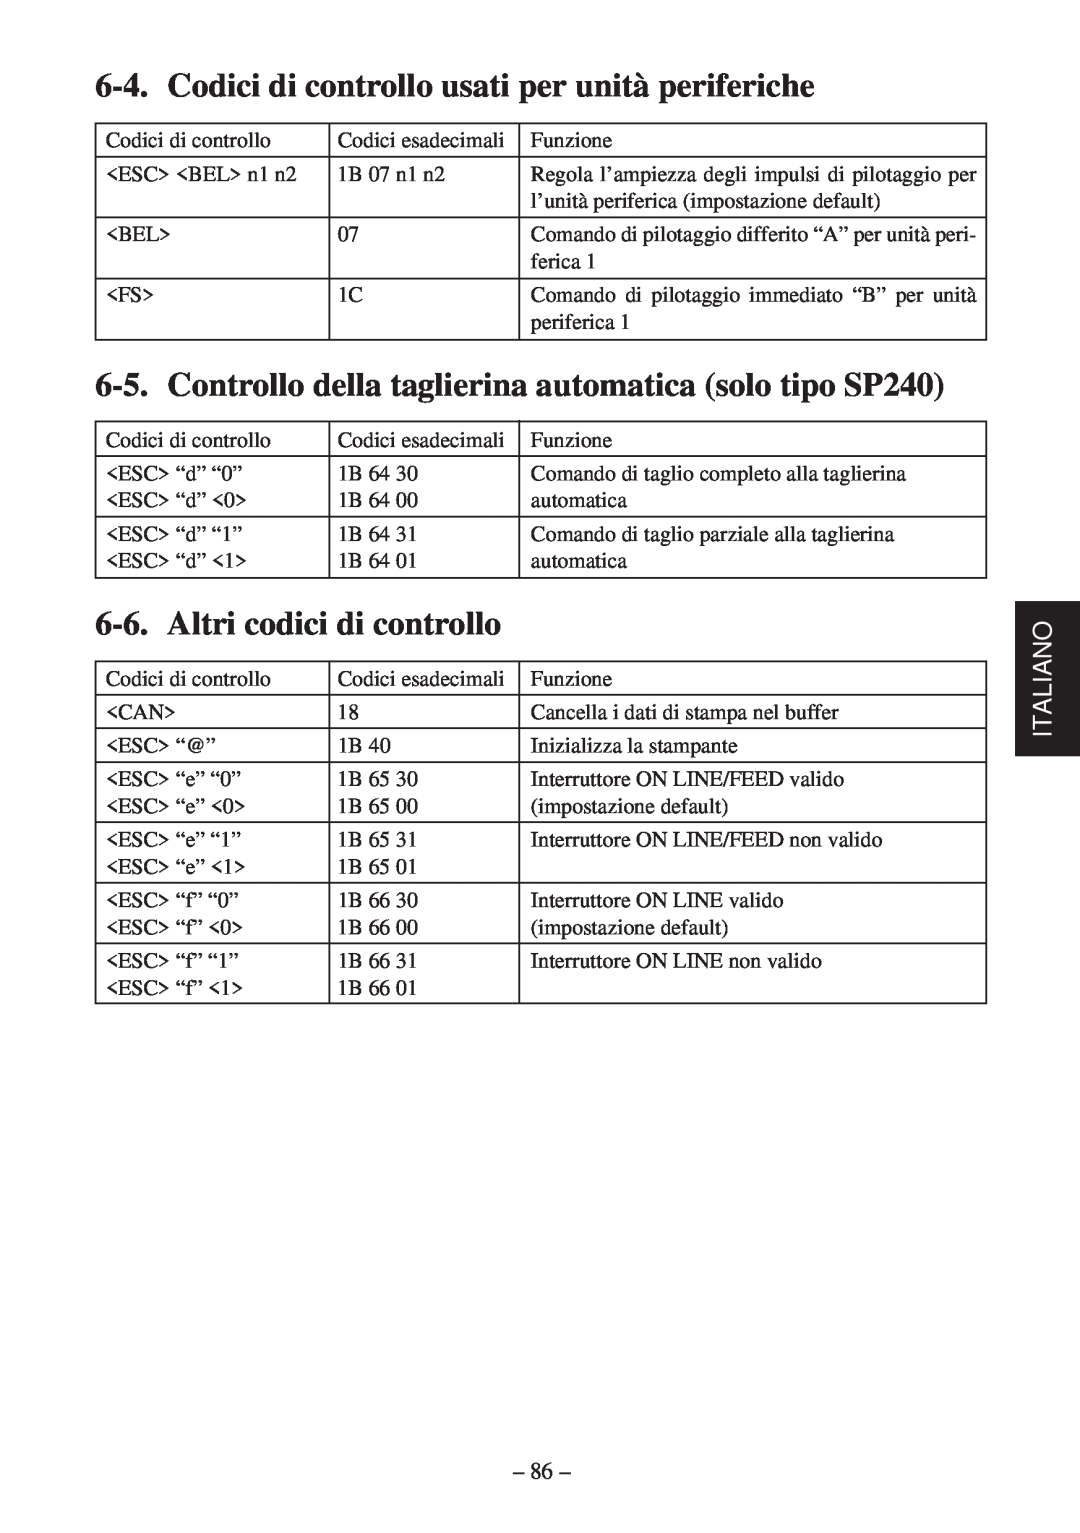 Star Micronics SP200F user manual Codici di controllo usati per unità periferiche, Altri codici di controllo, Italiano 